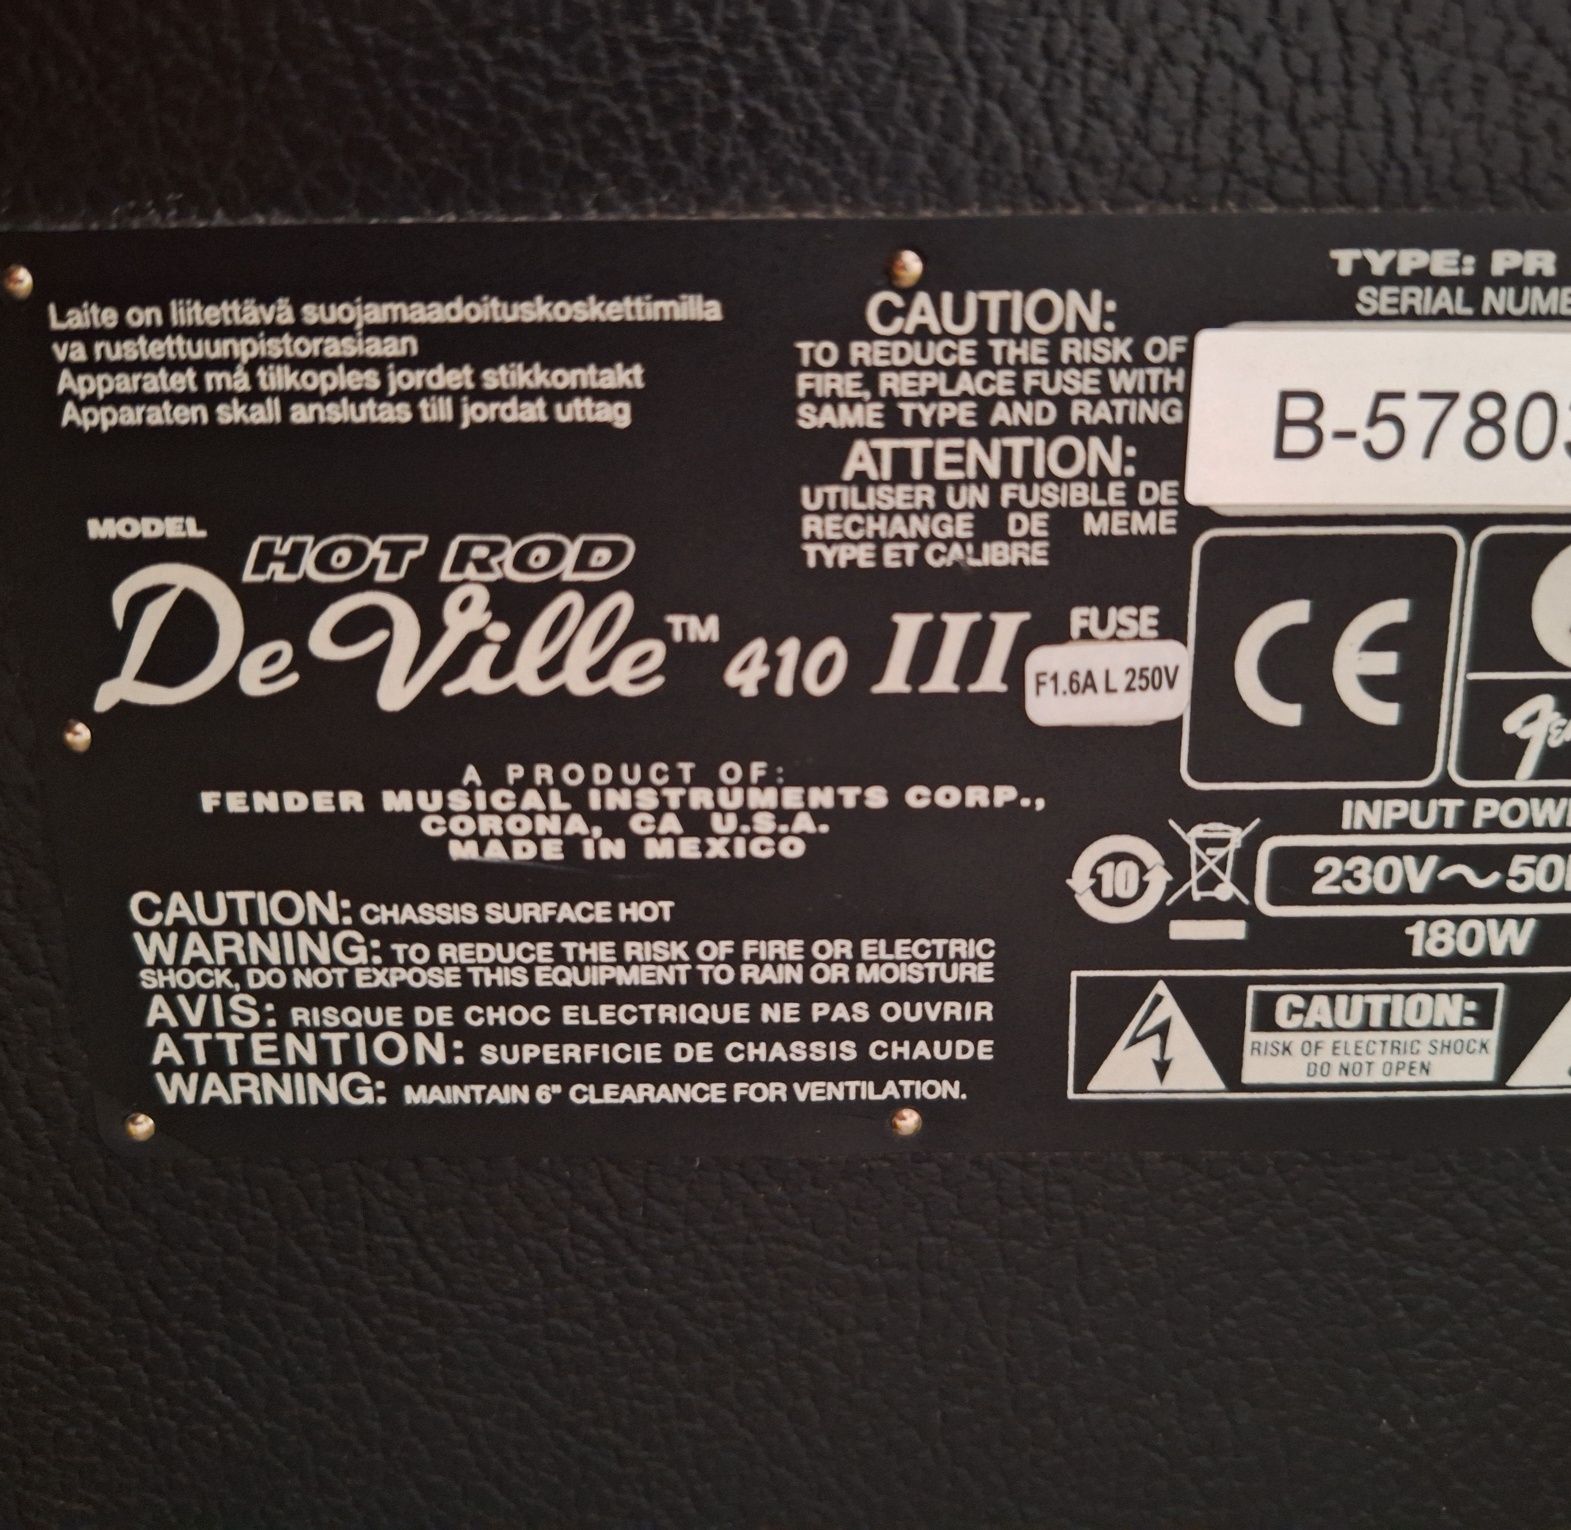 Fender Hot Rod Deville 410 III - 60w